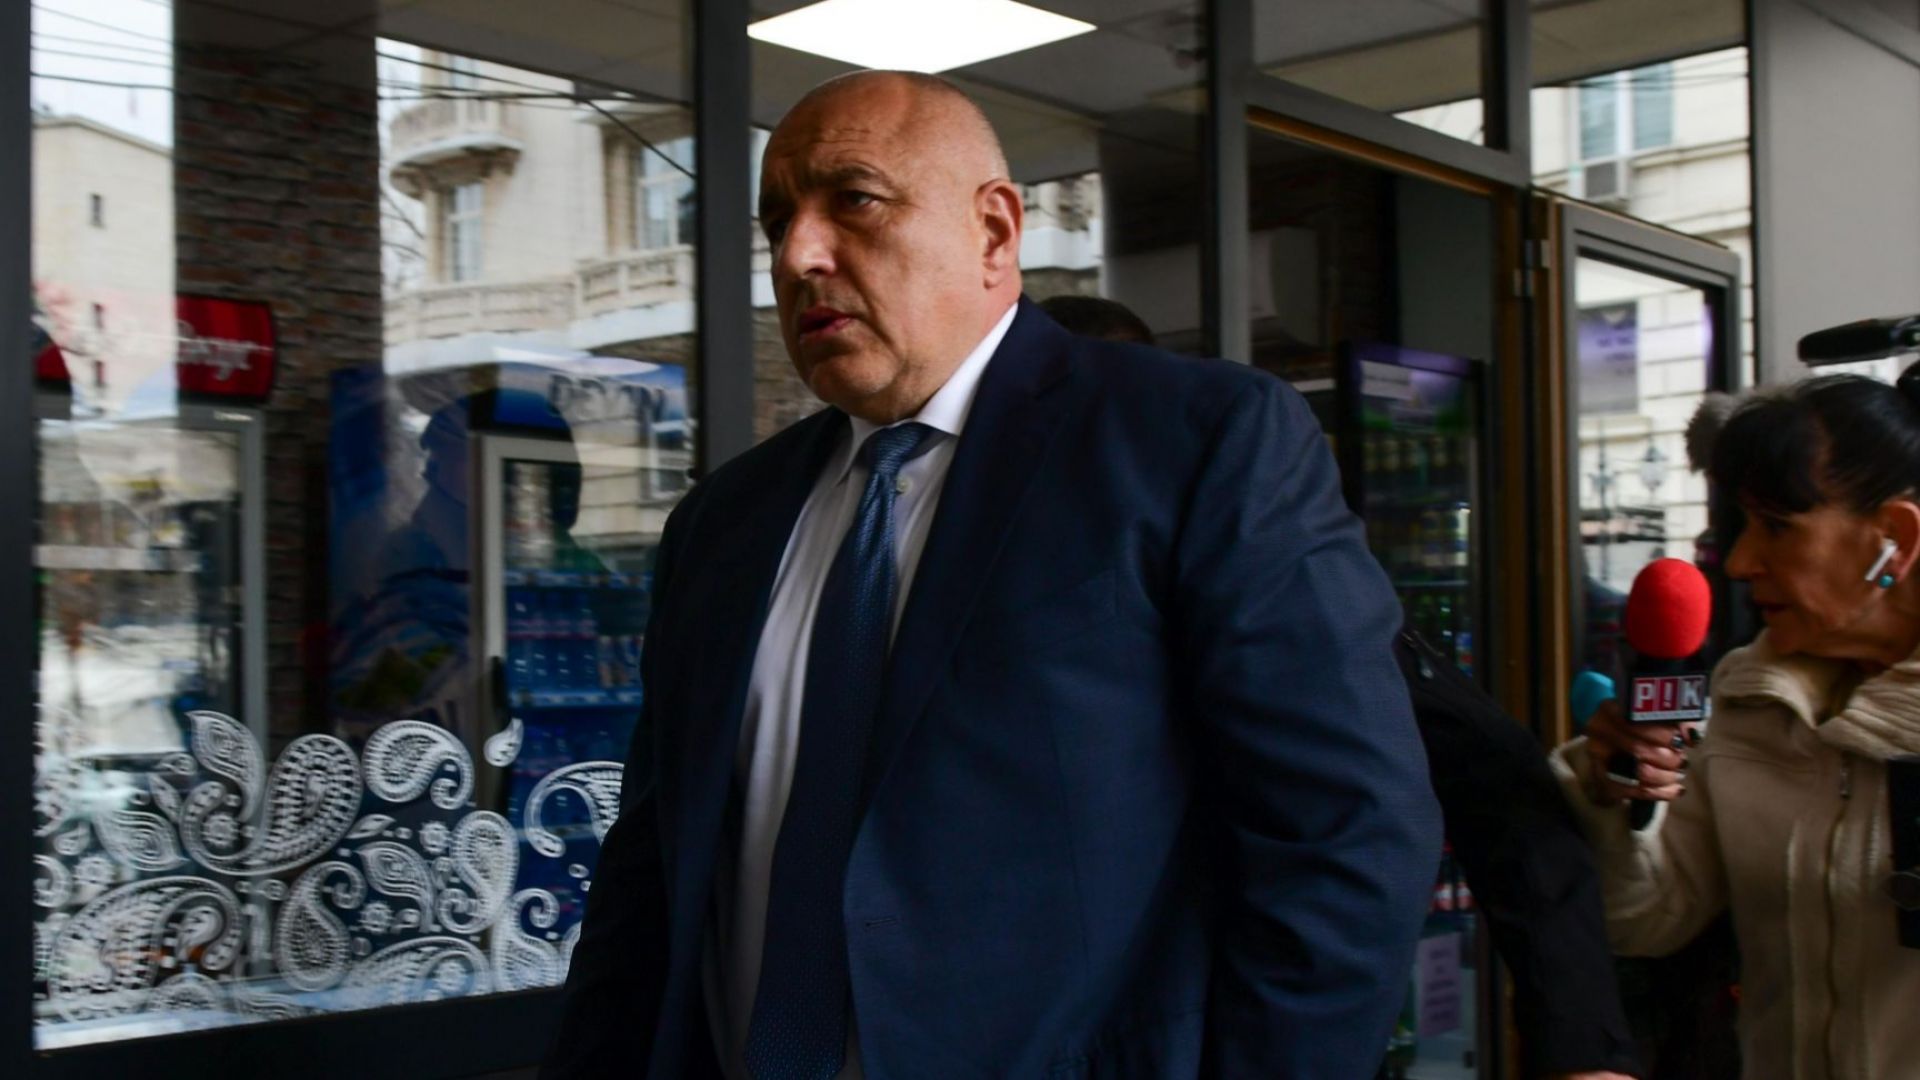  Борисов: Разпитът ми е за отвличане на вниманието, докато кабинетът тегли нов дълг и прави големи сделки (снимки)